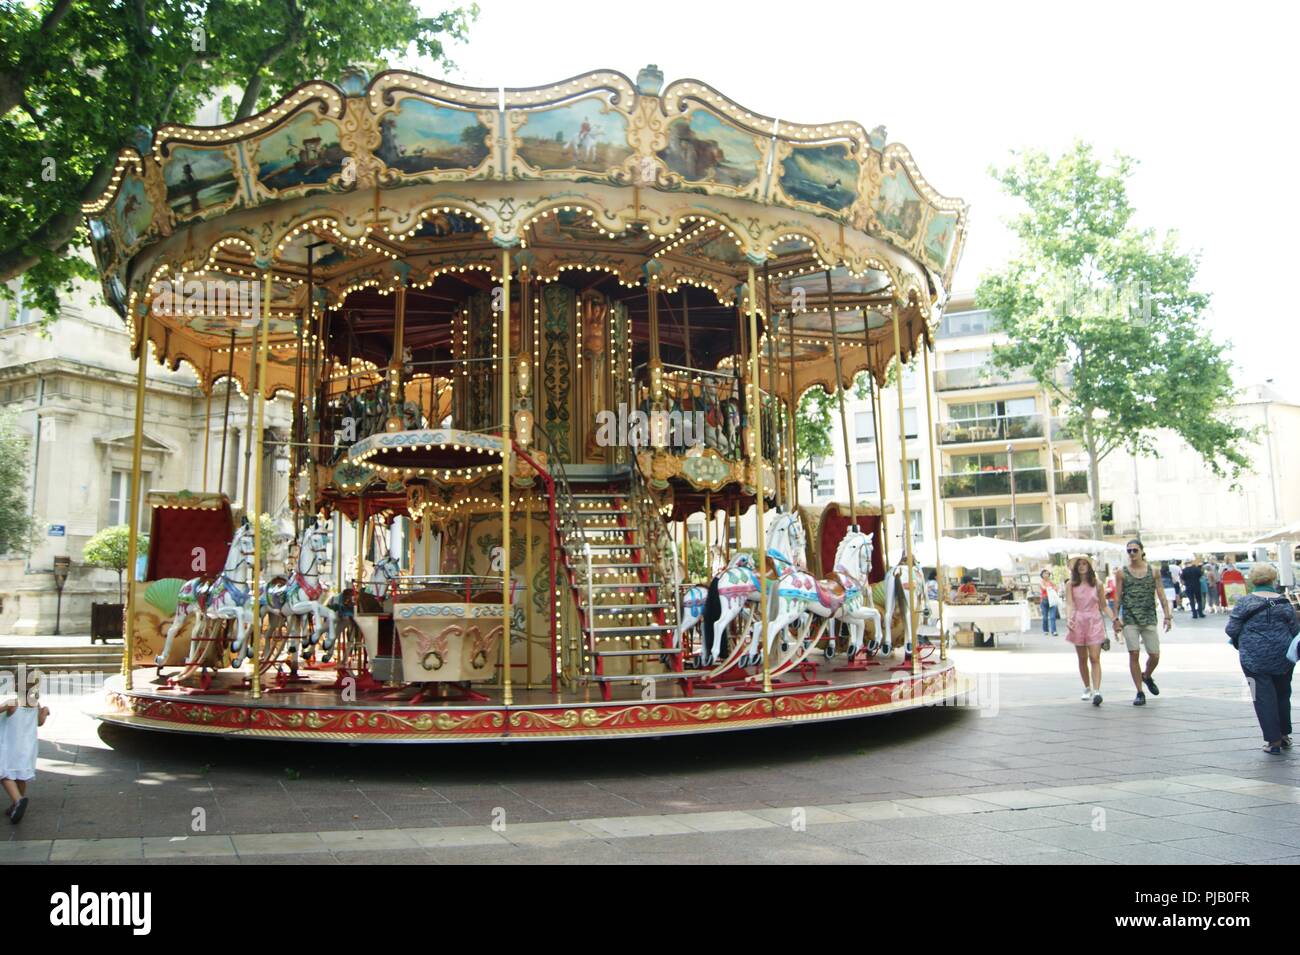 Fête foraine carrousel ride à Avignon, France Banque D'Images